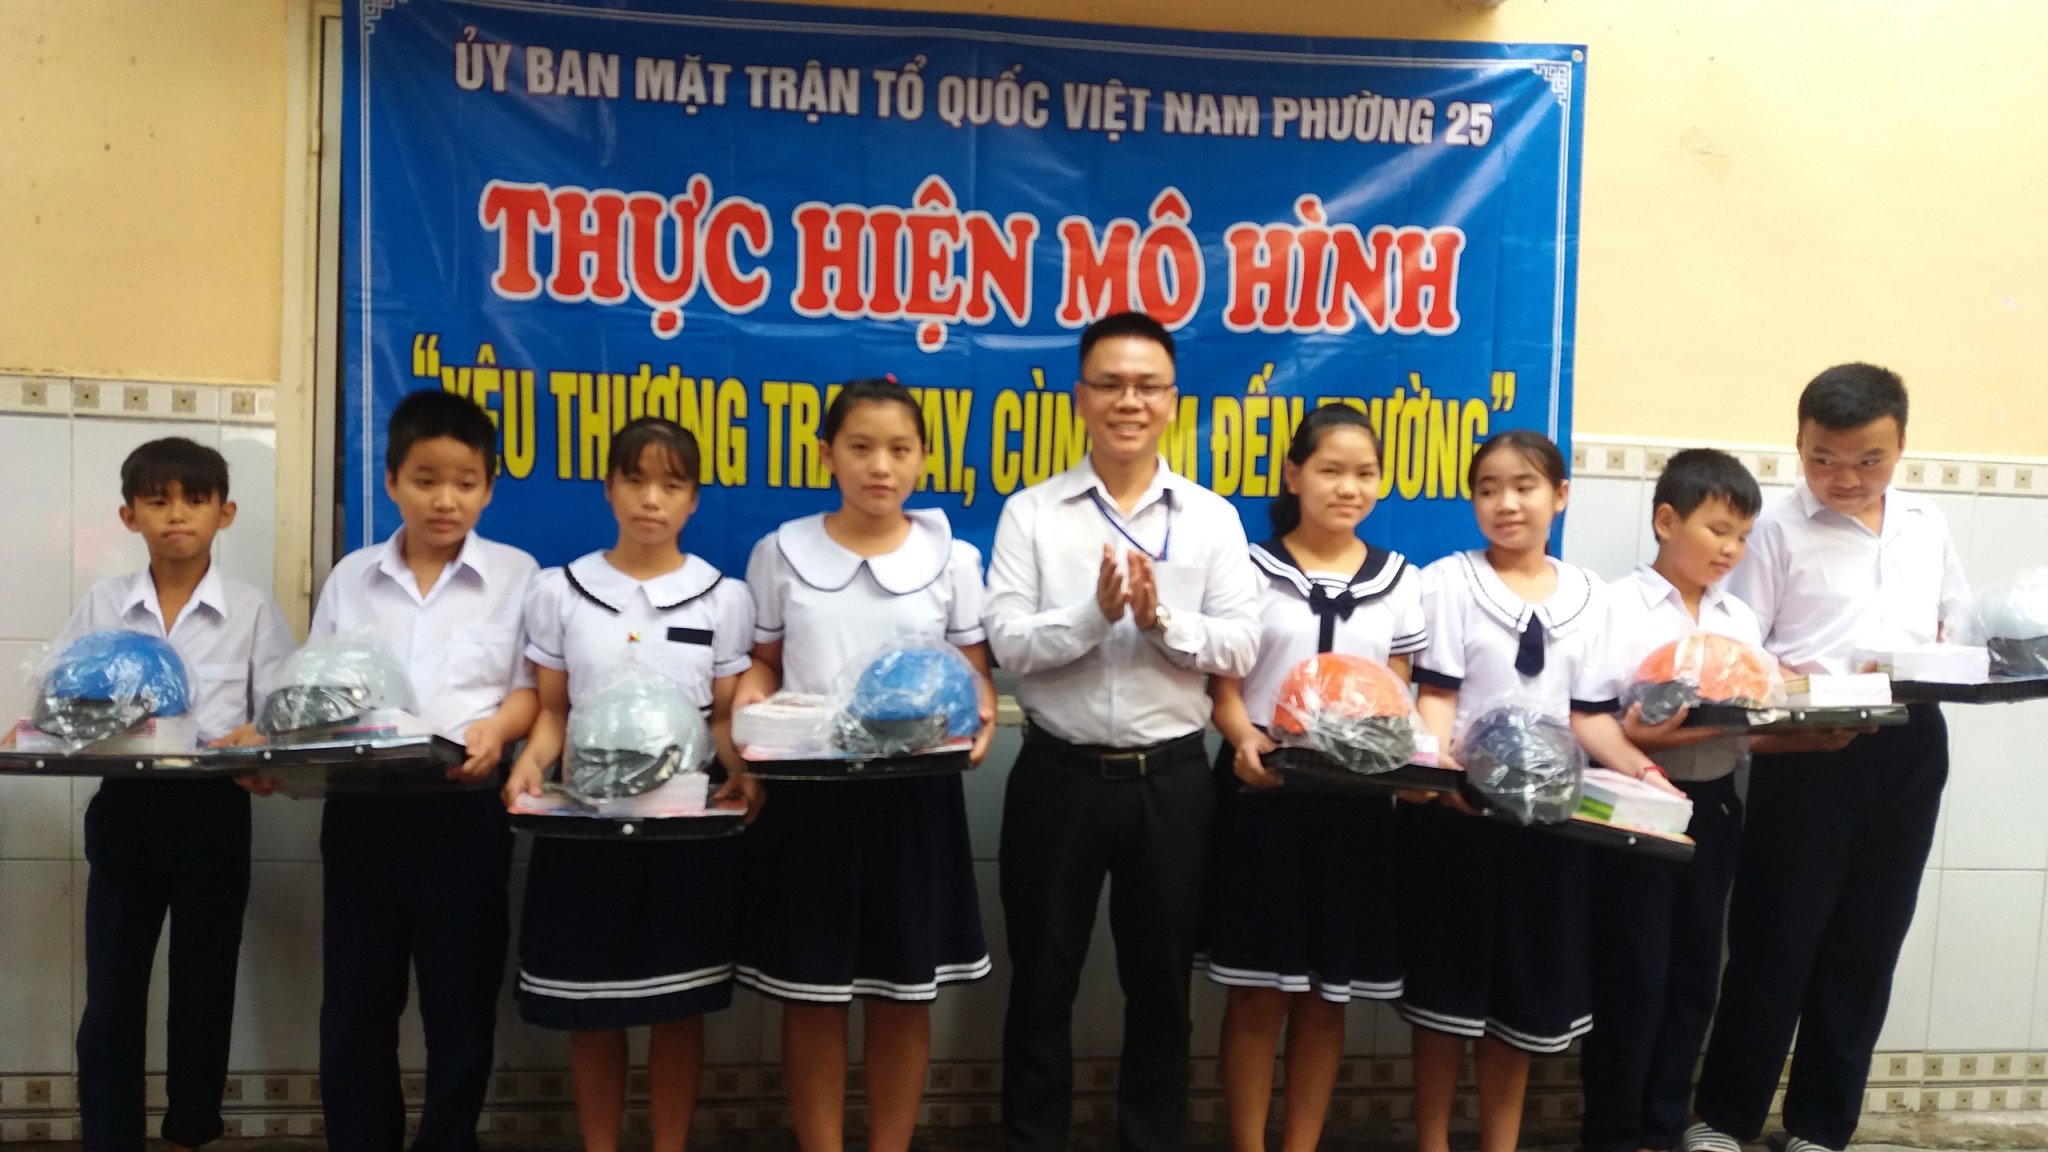 Phuong 25 Hinh 3